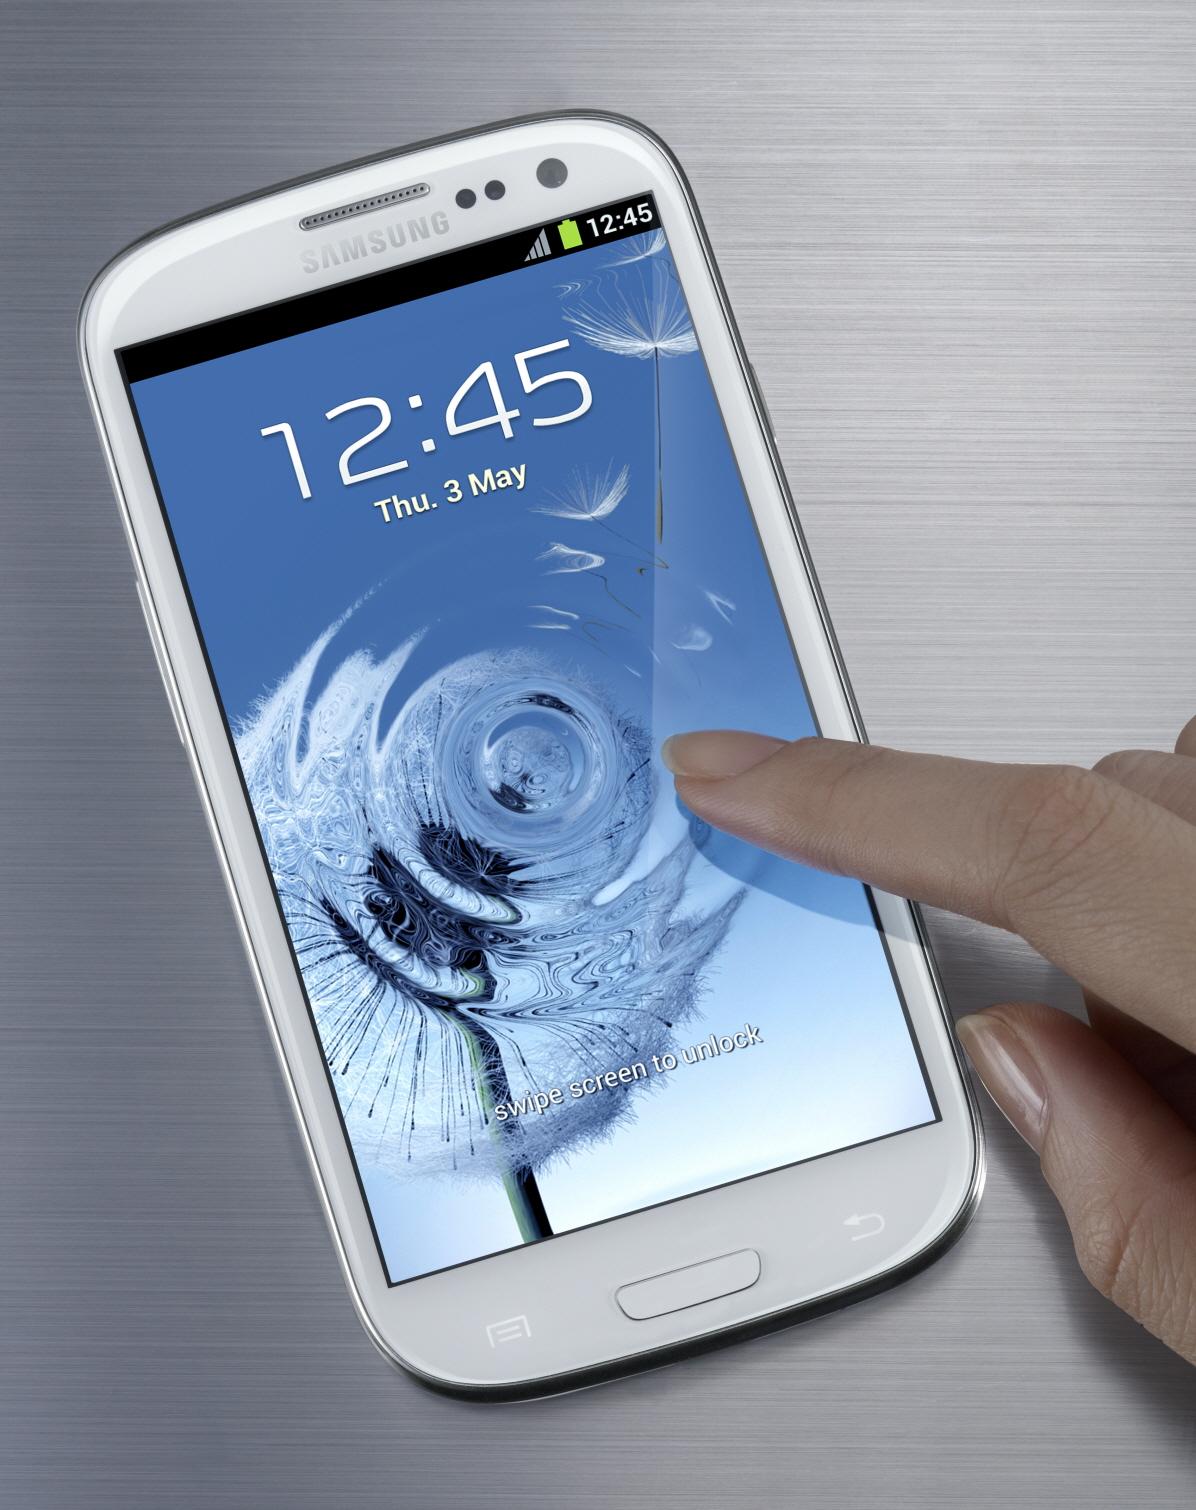 Samsung Galaxy S III er en av de mest solgte Android-mobilene for tiden.Foto: Samsung